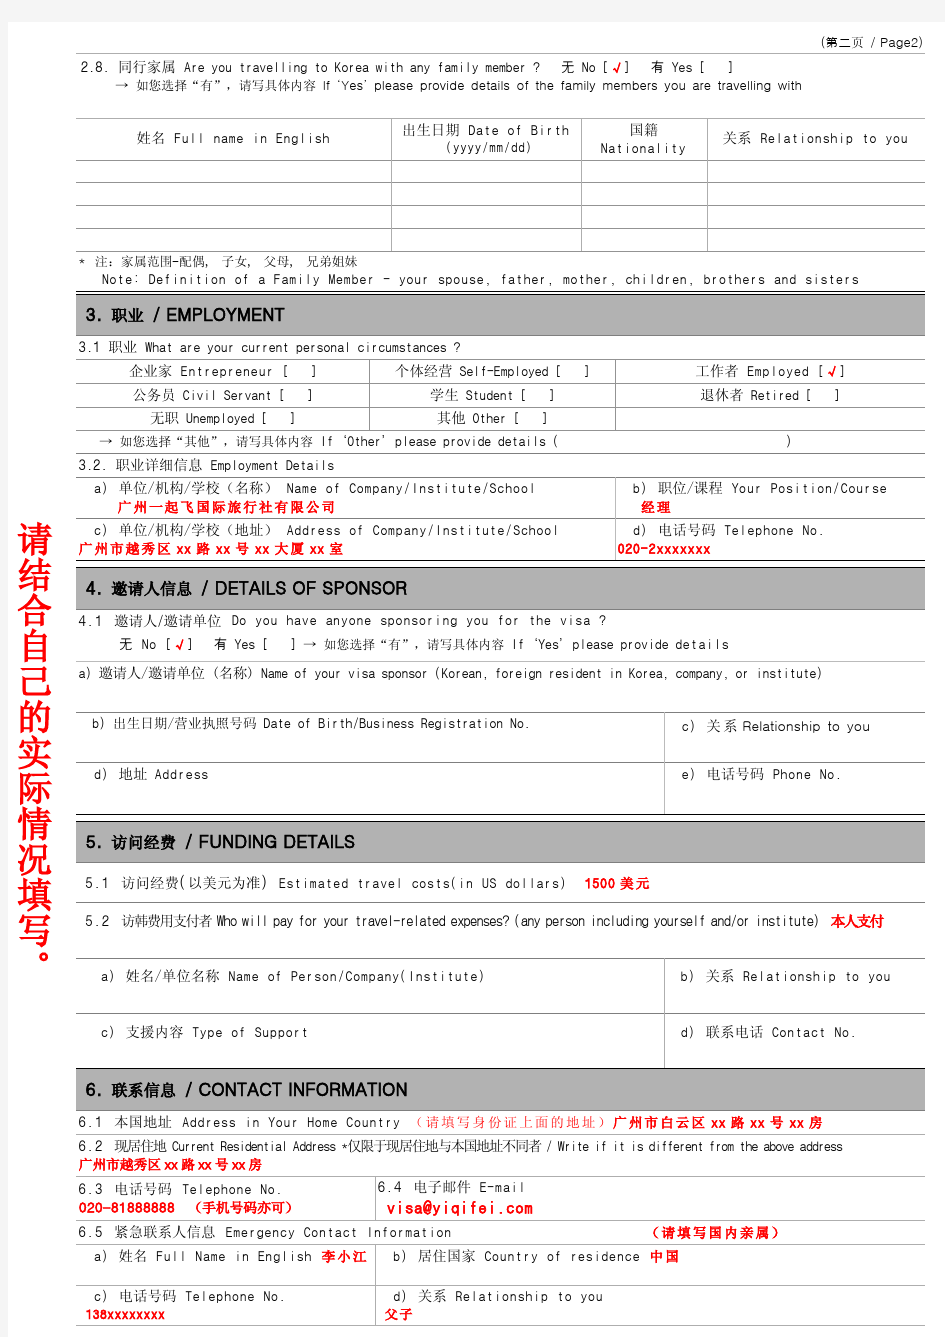 韩国签证申请表 (填写模板)